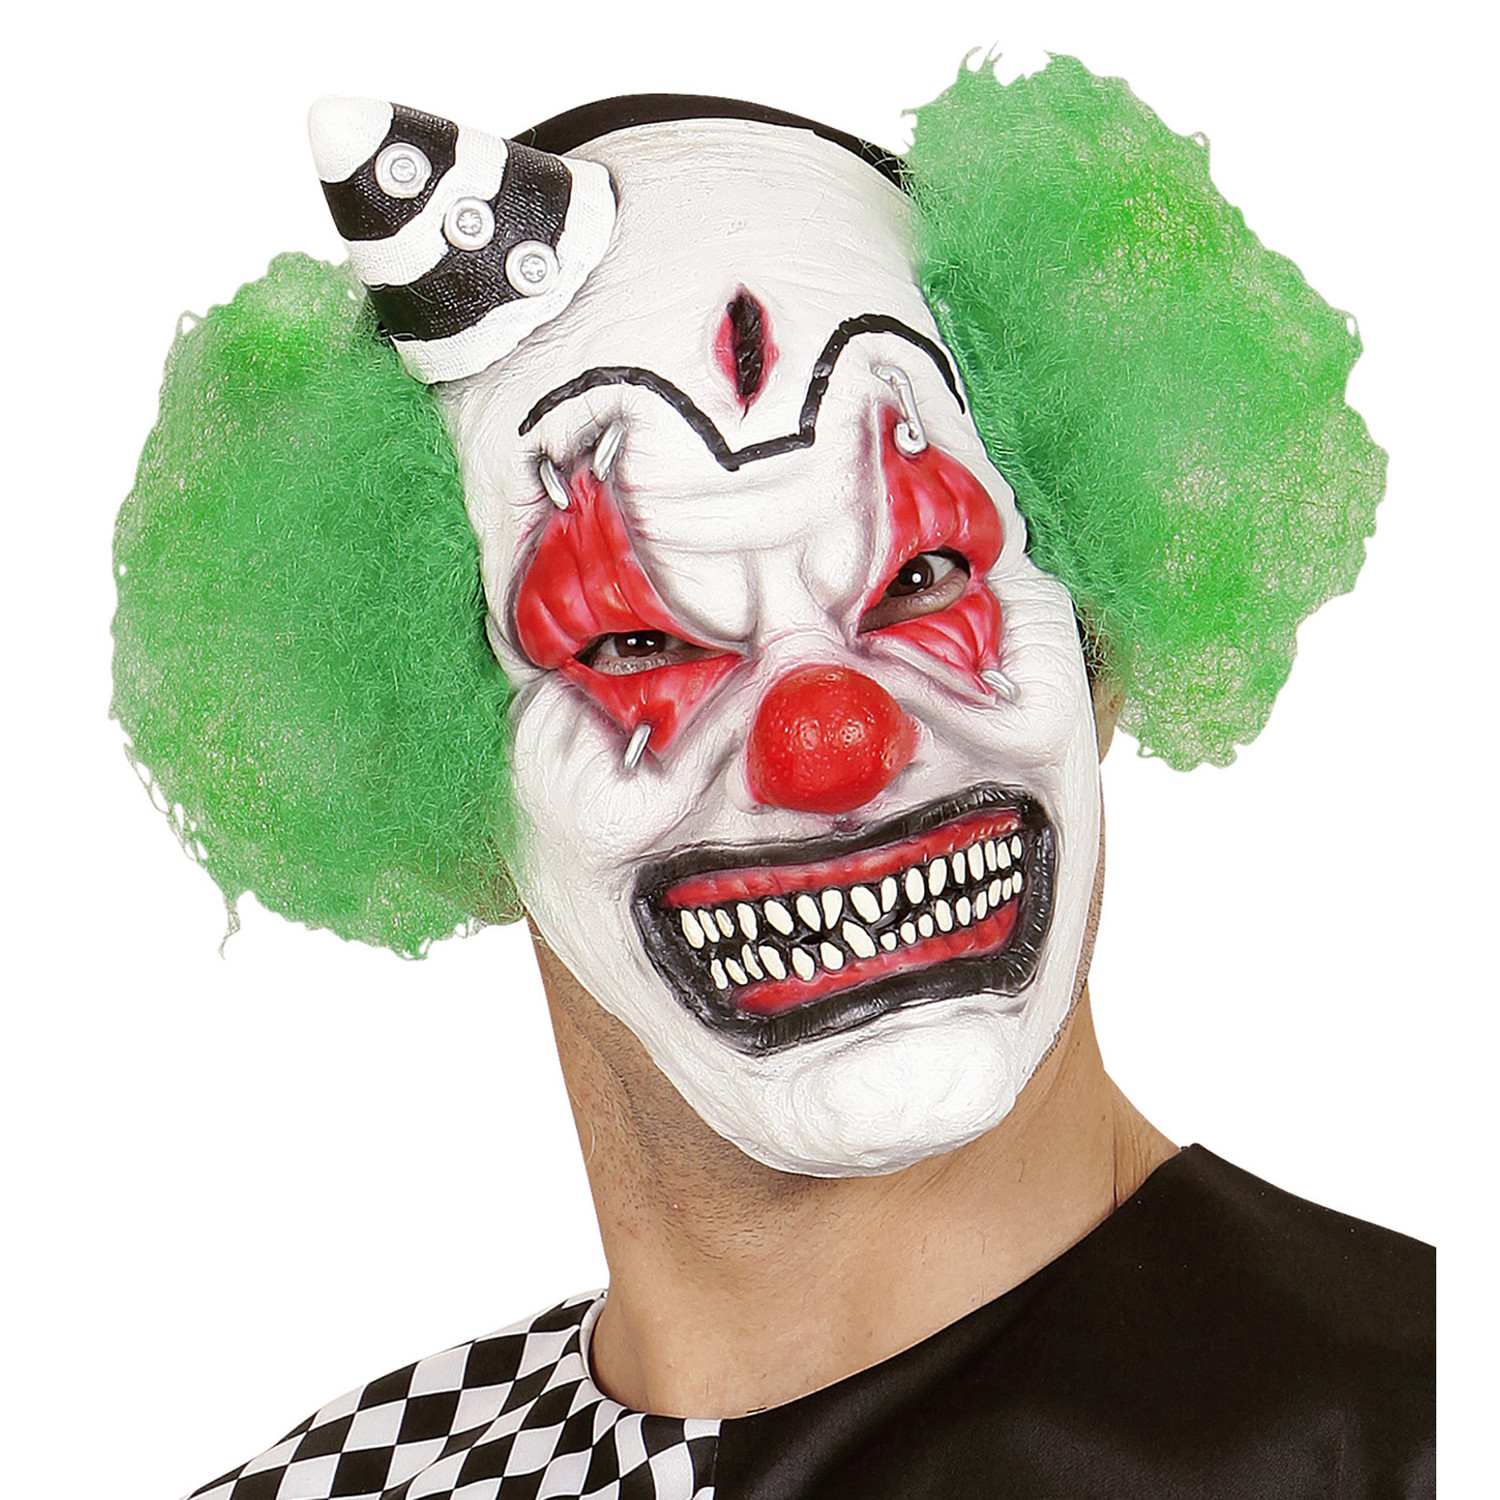 vijver Gemeenten Locomotief Clownsmasker enge crimiclown - e-Carnavalskleding